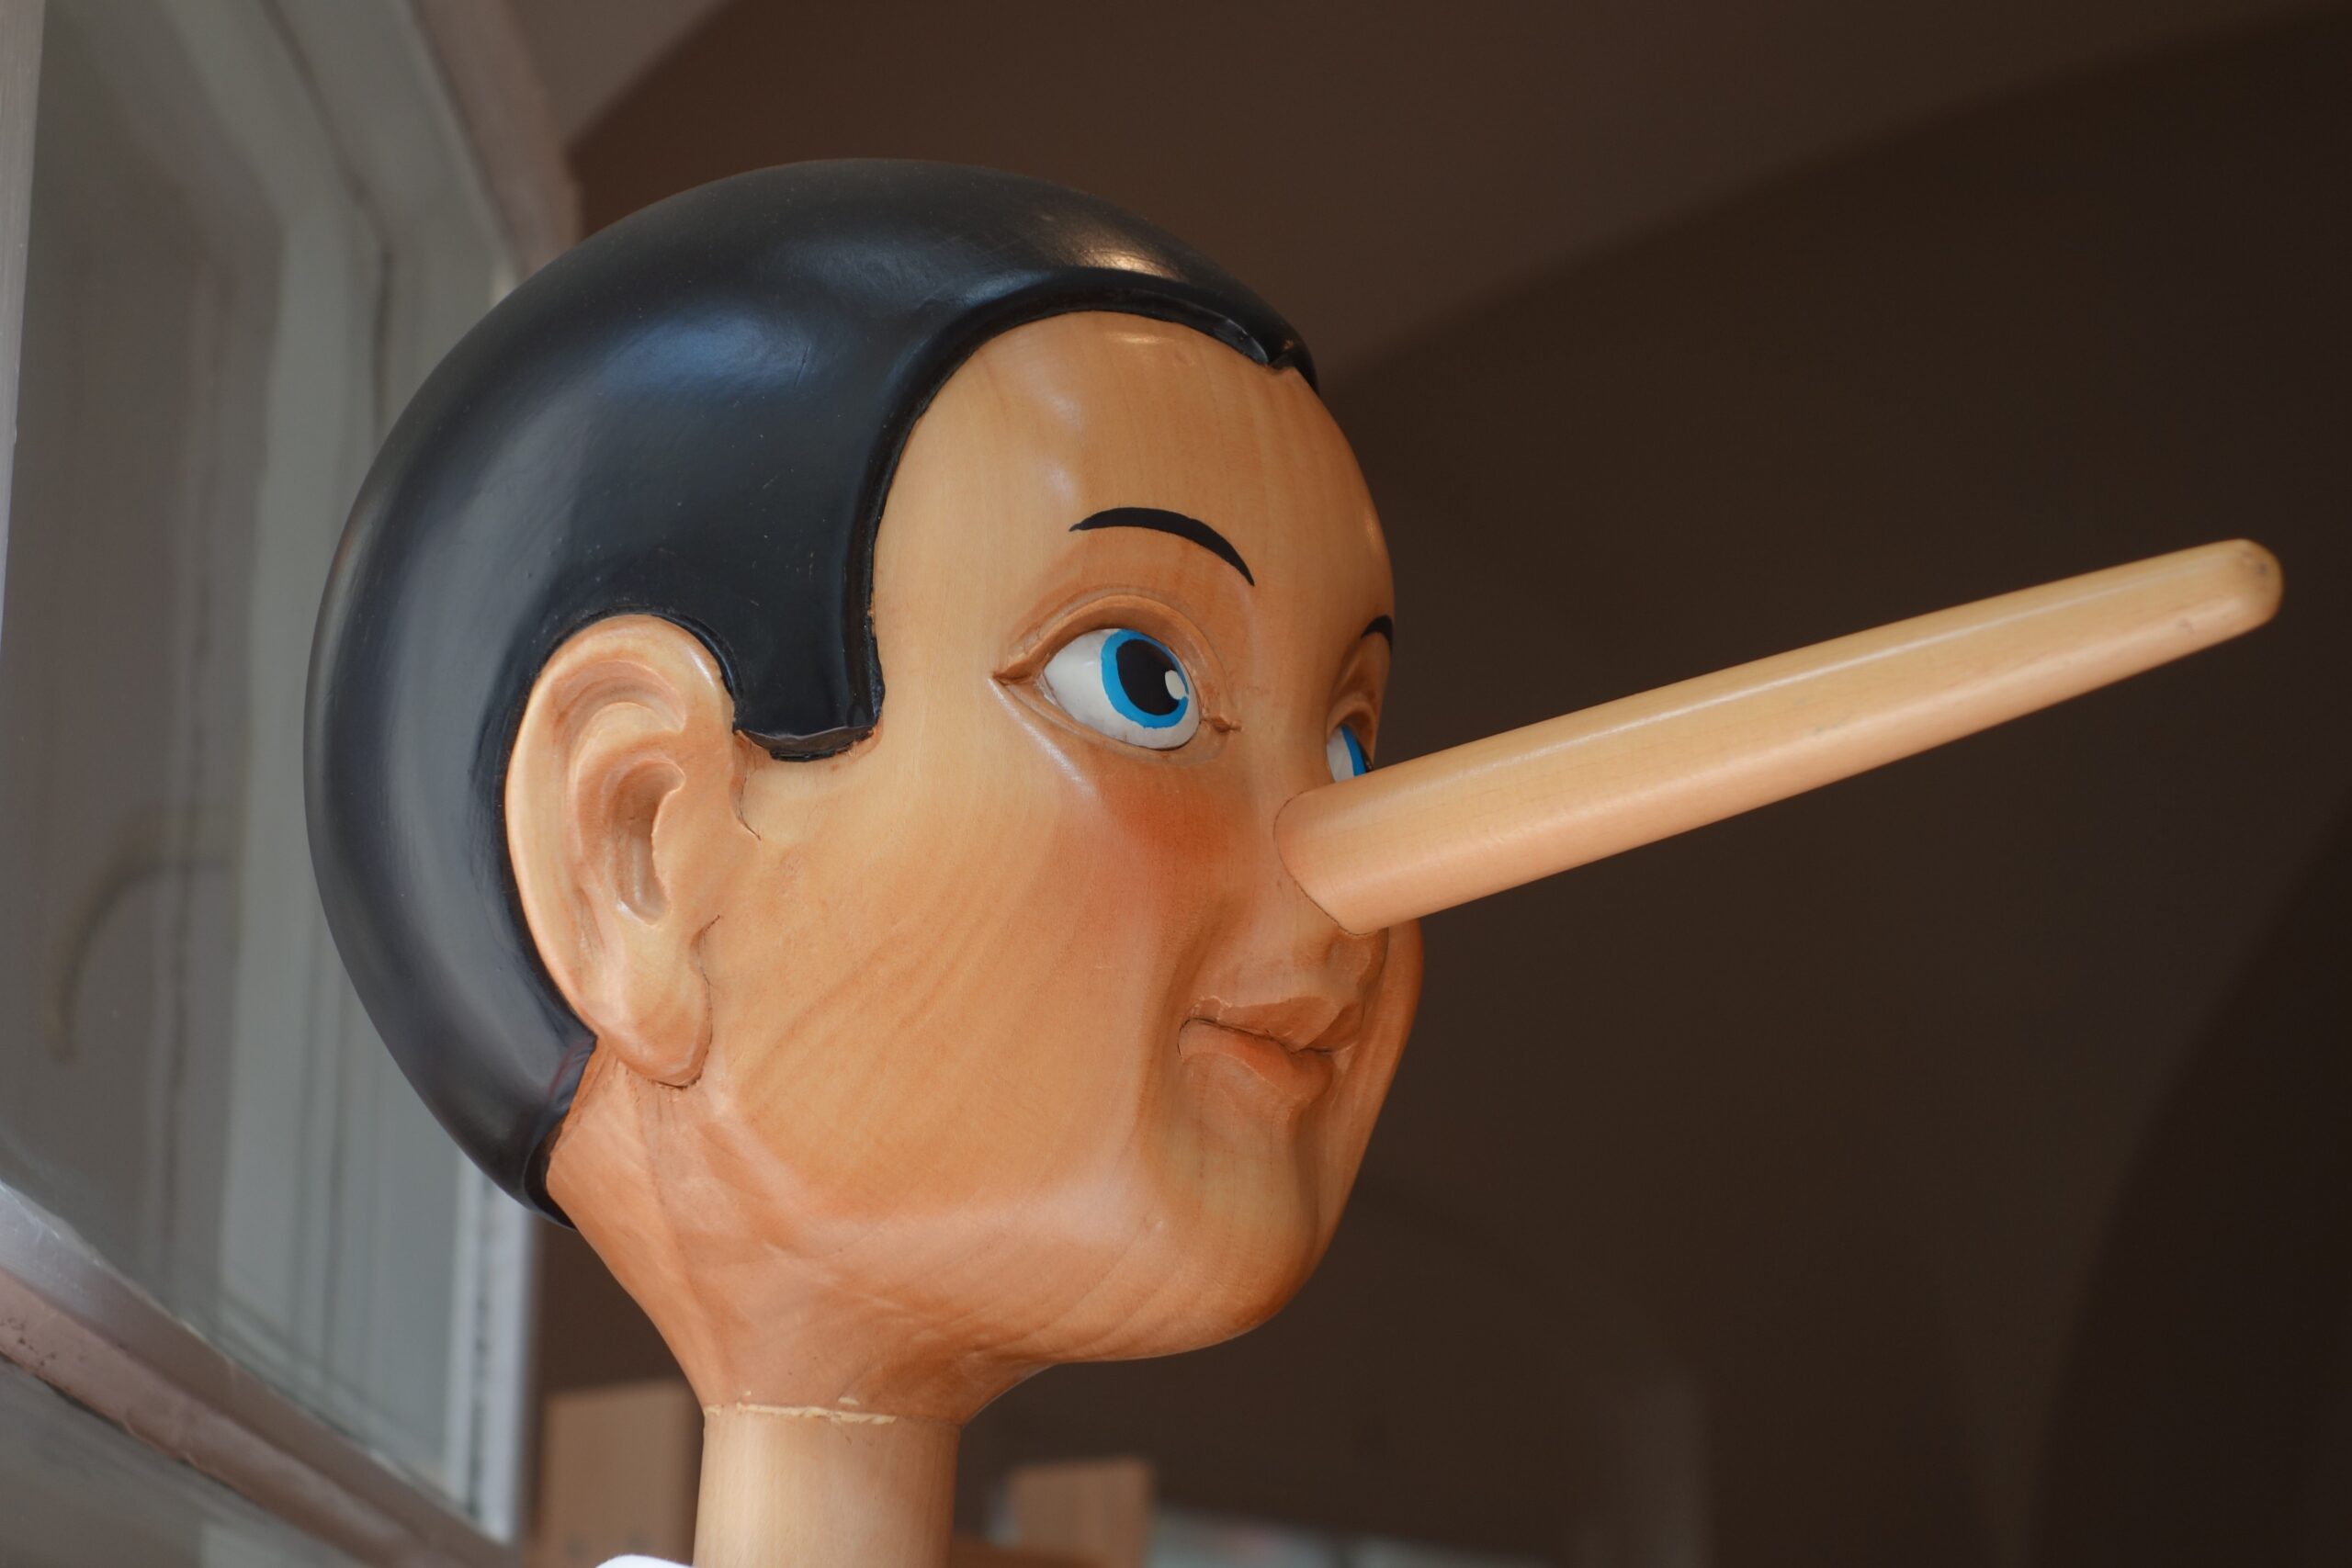 Pinocchio, der Junge, dessen Nase bei jeder Lüge beträchtlich wächst, was ihn verrät und letztlich vom Lügen abbringt.